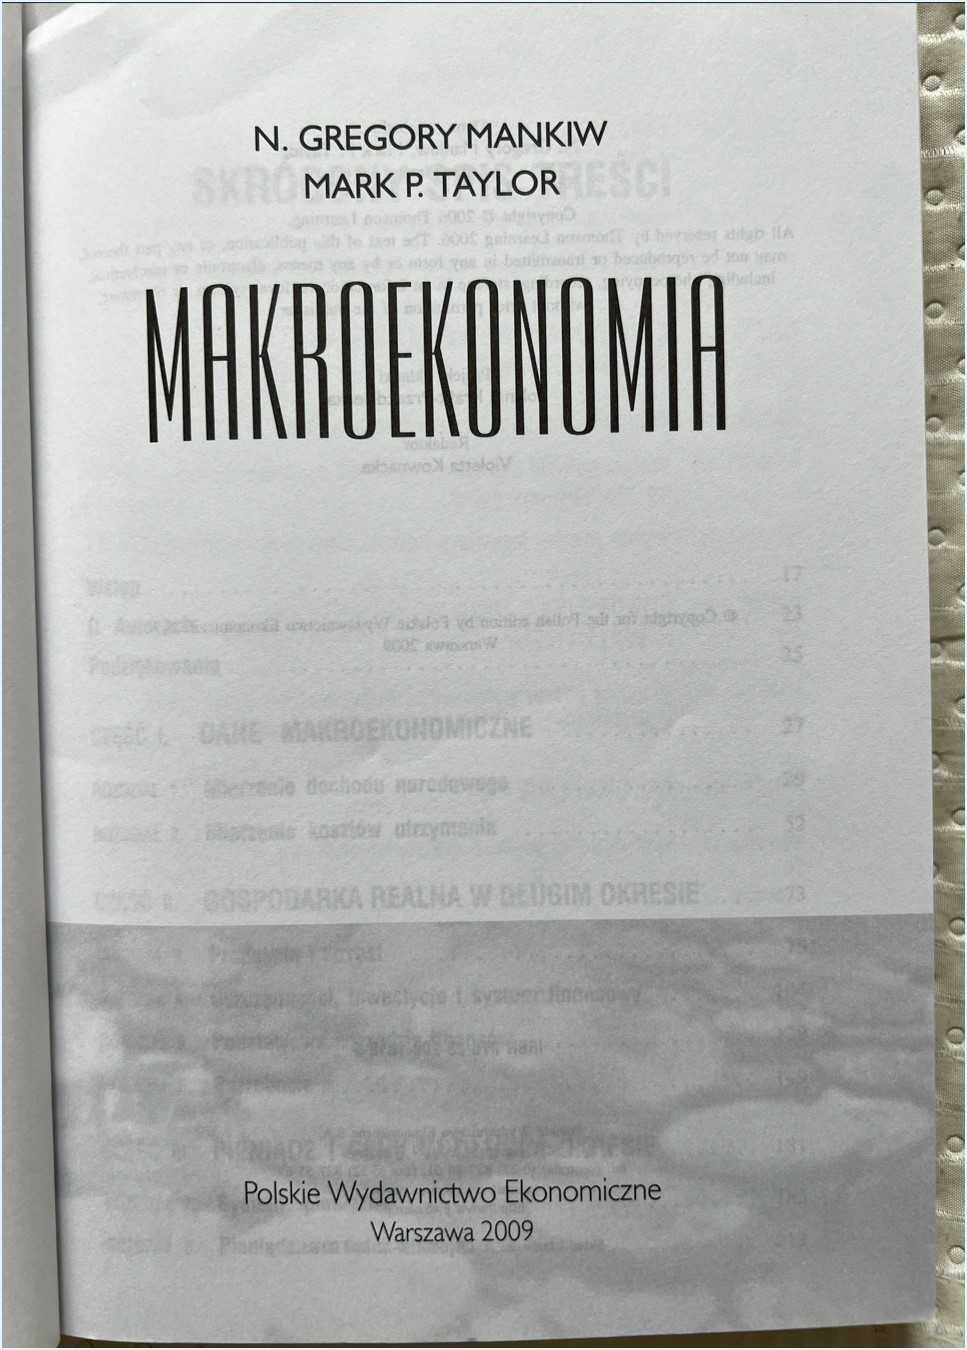 08 - Makroekonomia, Mankiw/Taylor